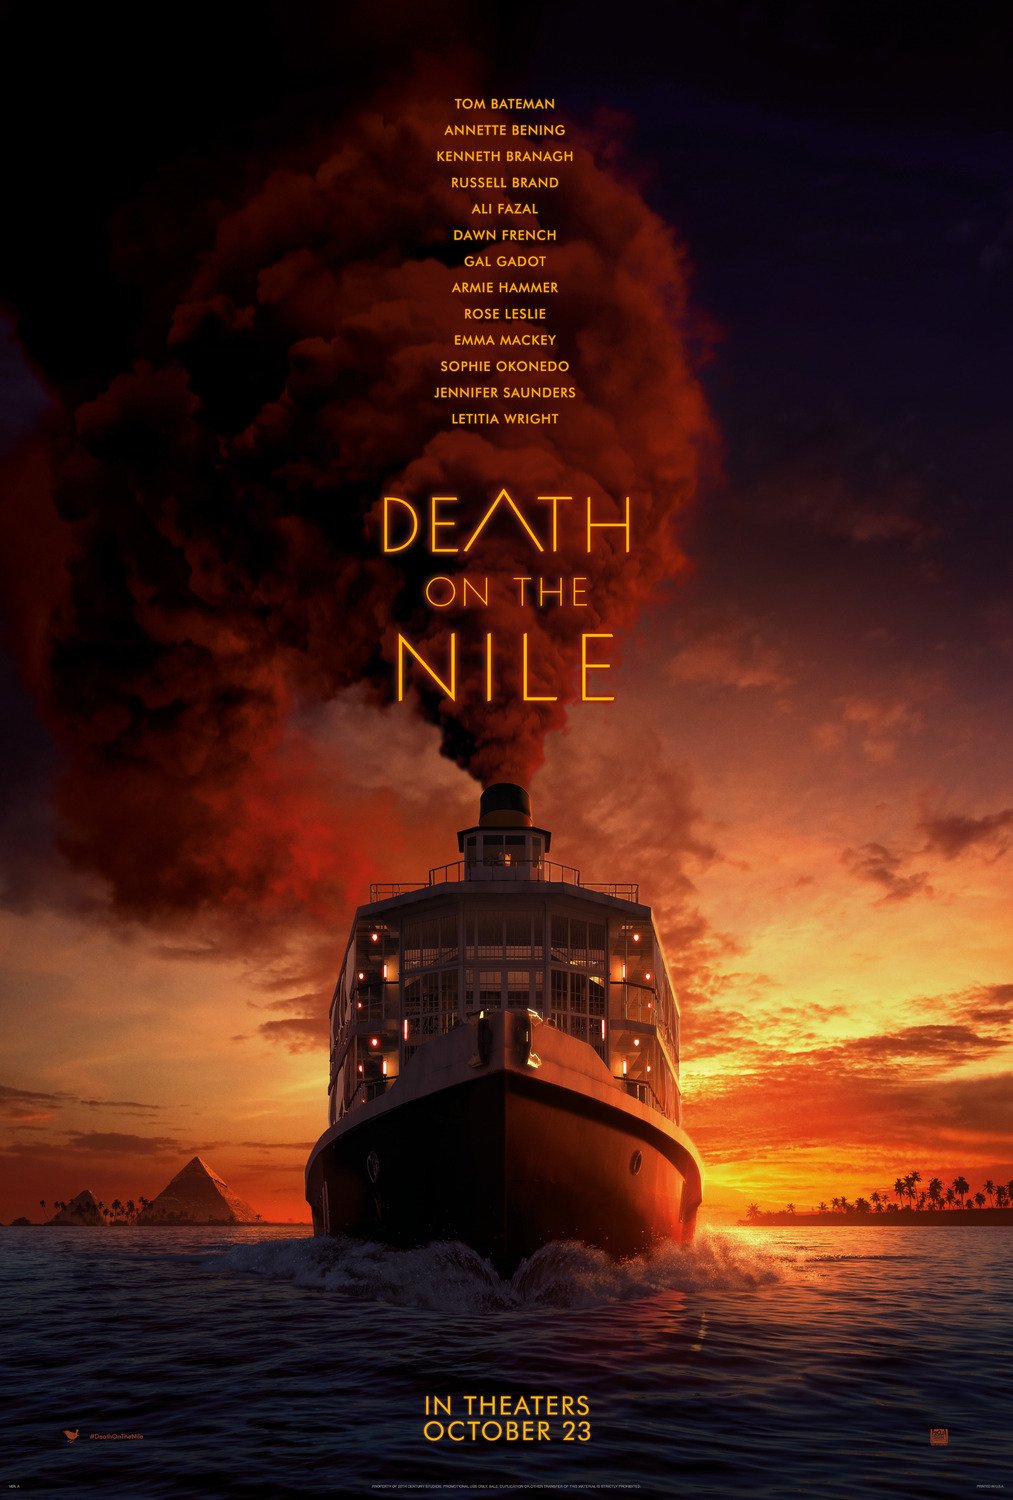 L'imbarcazione di Assassinio sul Nilo e il grande fumo rosso